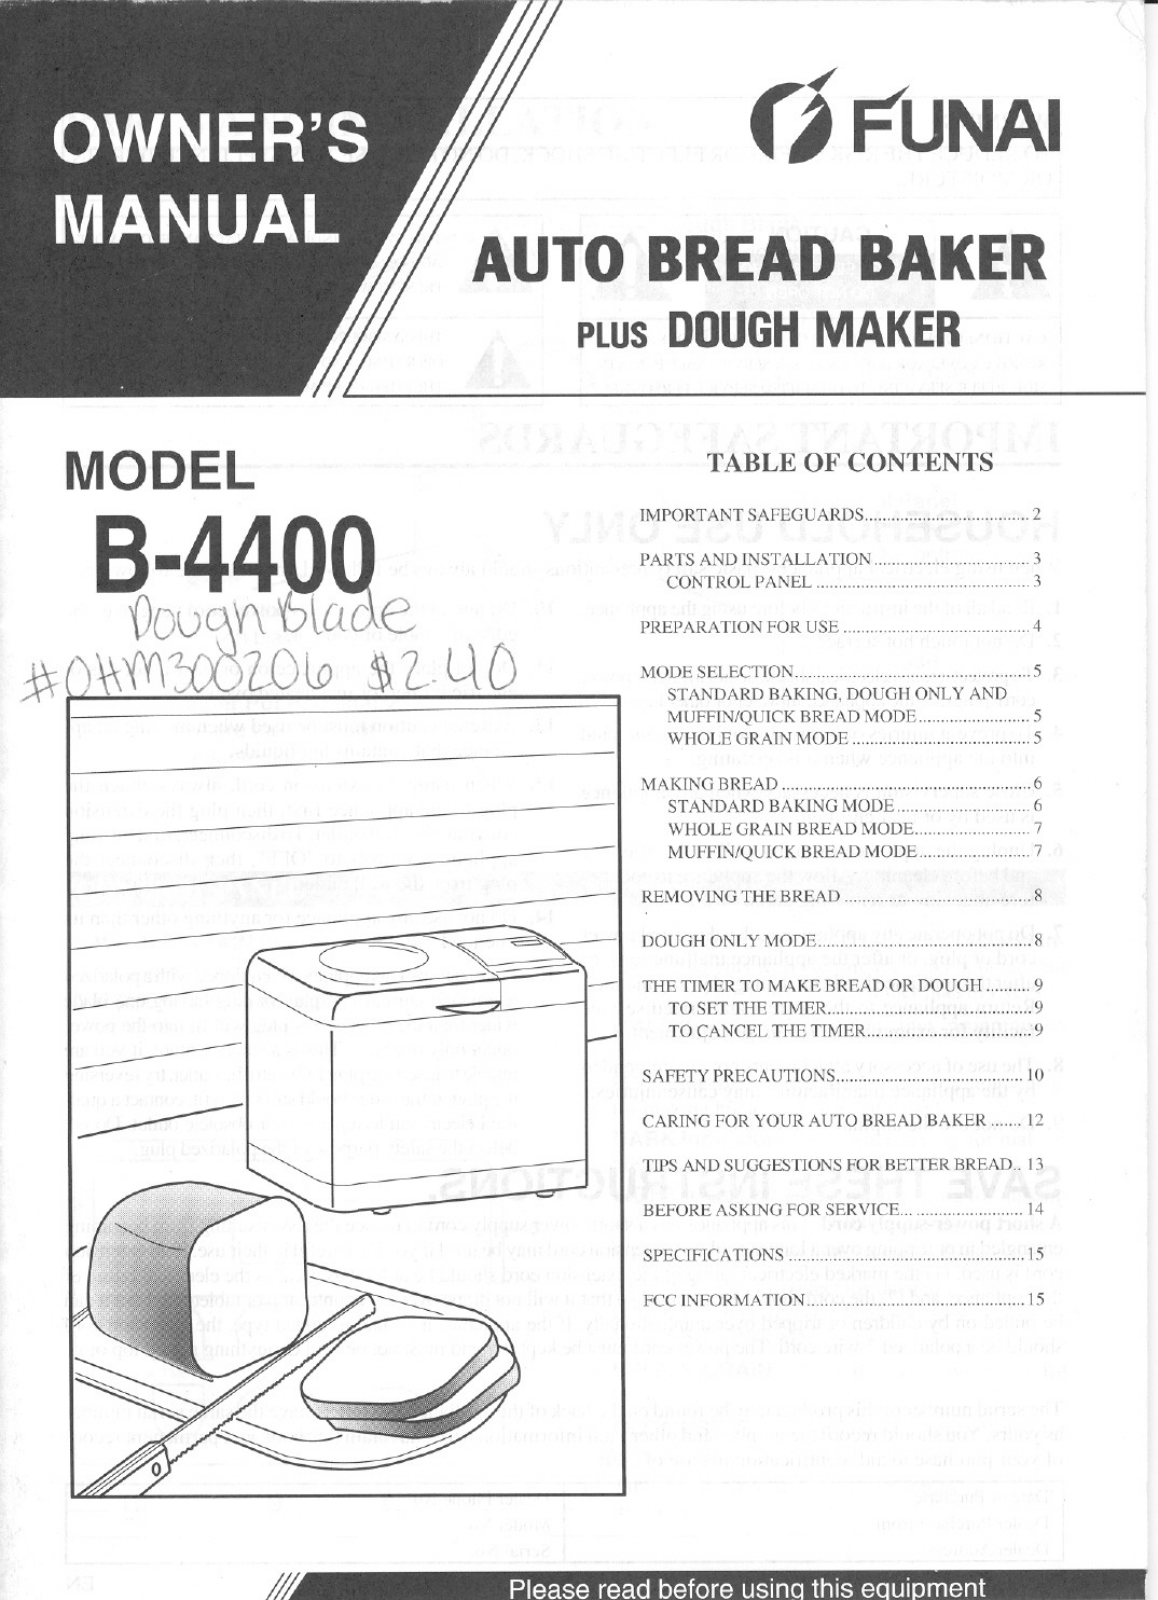 Funai B4400 Manual